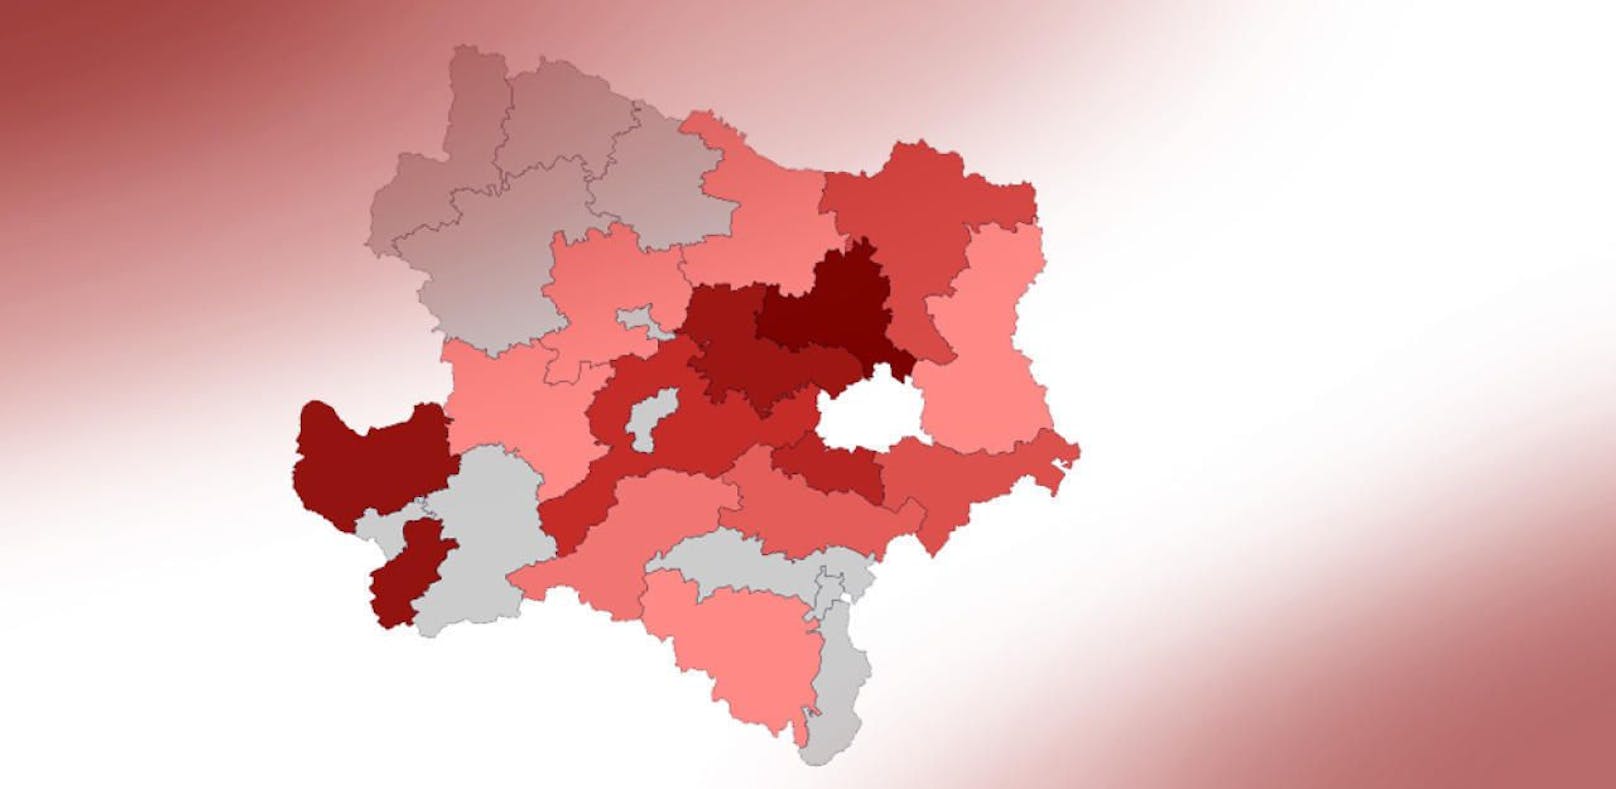 821 aktuell Erkrankte gab in in Niederösterreich mit Stand Mittwochfrüh, 9 Uhr.